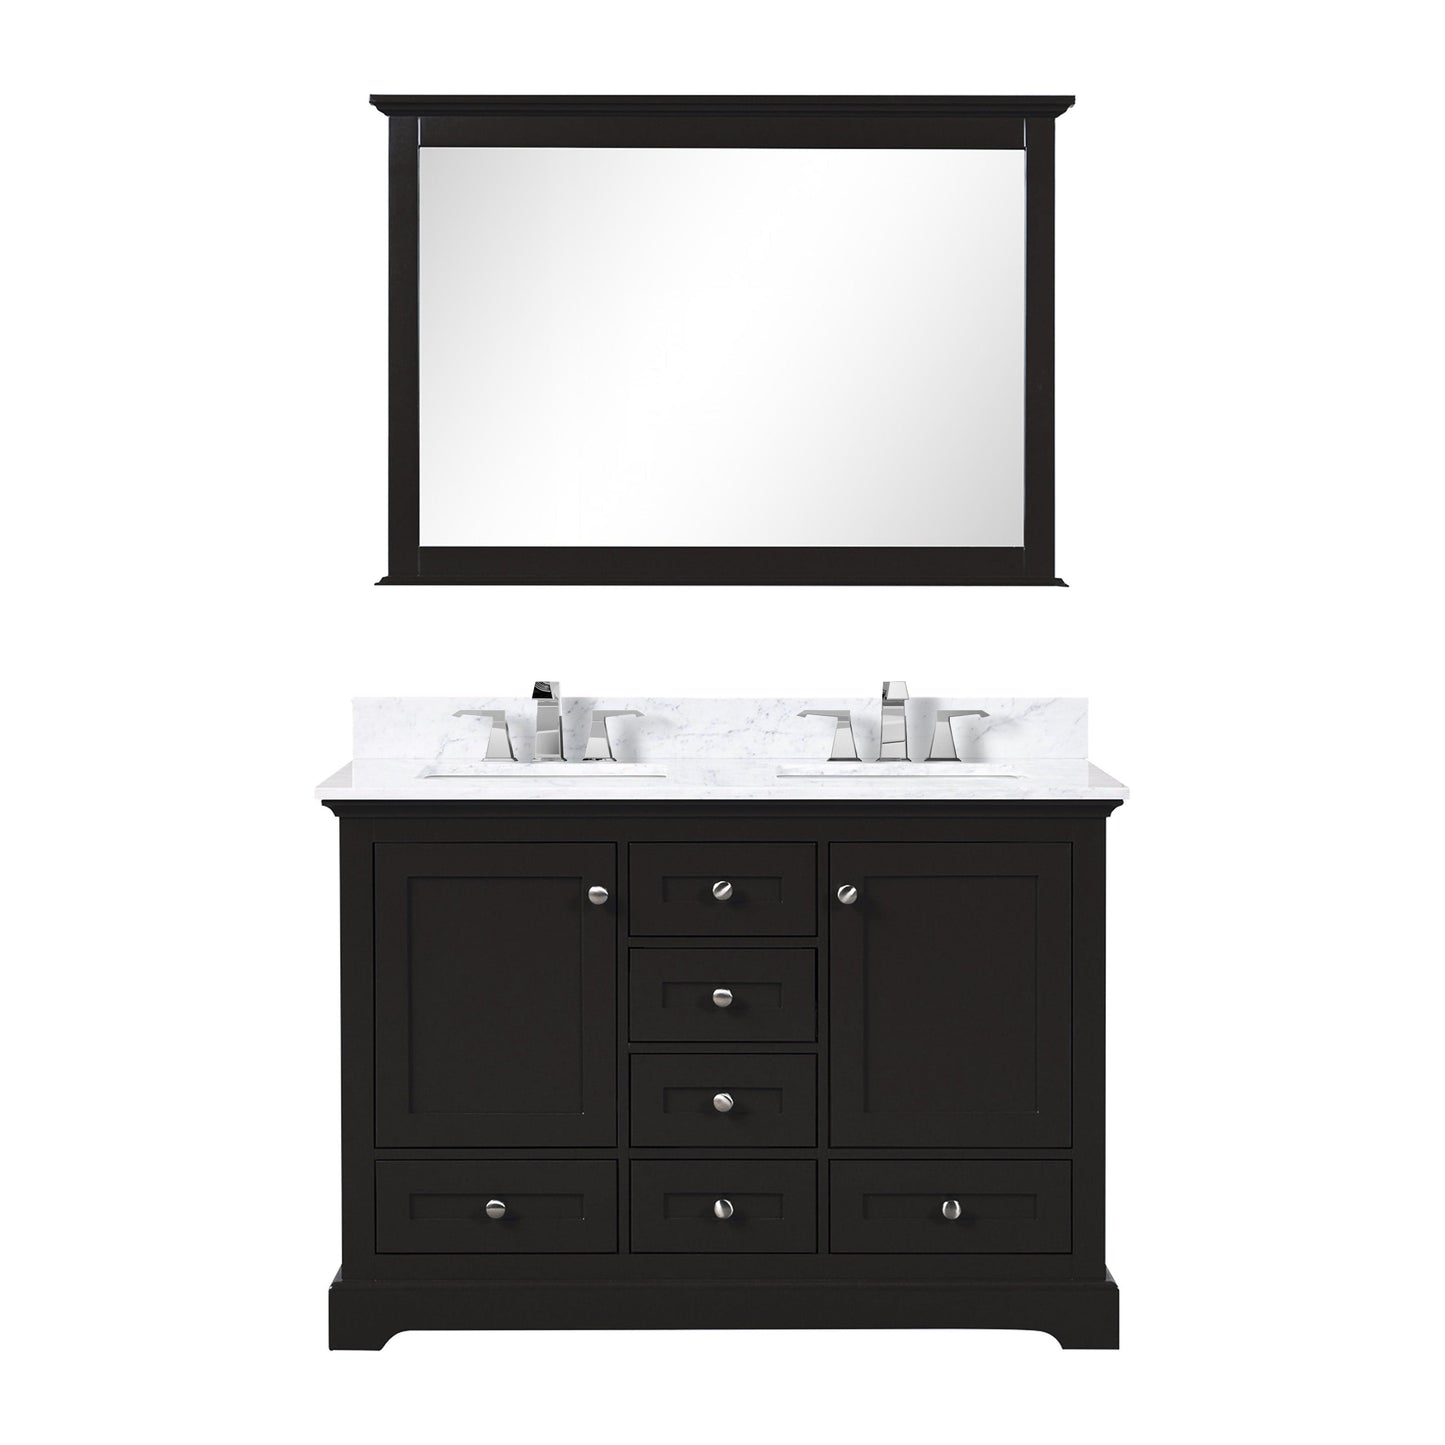 Lexora Bathroom Vanity Espresso / Carrara Marble / No Mirror Dukes 48" x 22" Double Bath Vanity